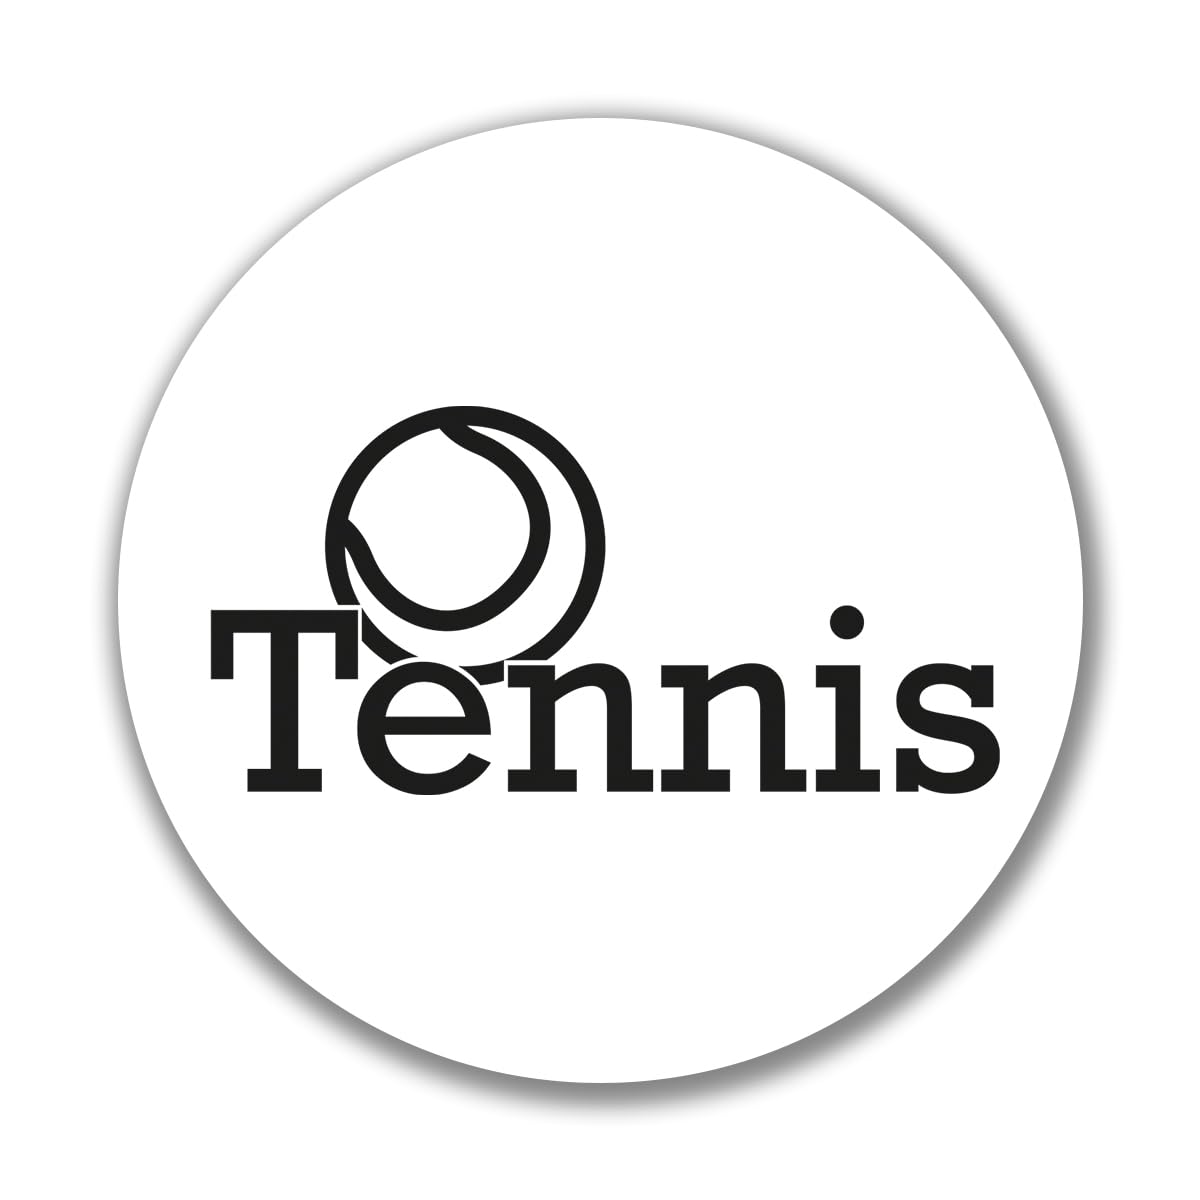 Huuraa Aufkleber Tennis Ball Sticker Größe 10cm mit Motiv für alle Tennis Fans Geschenk Idee für Freunde und Familie von Huuraa